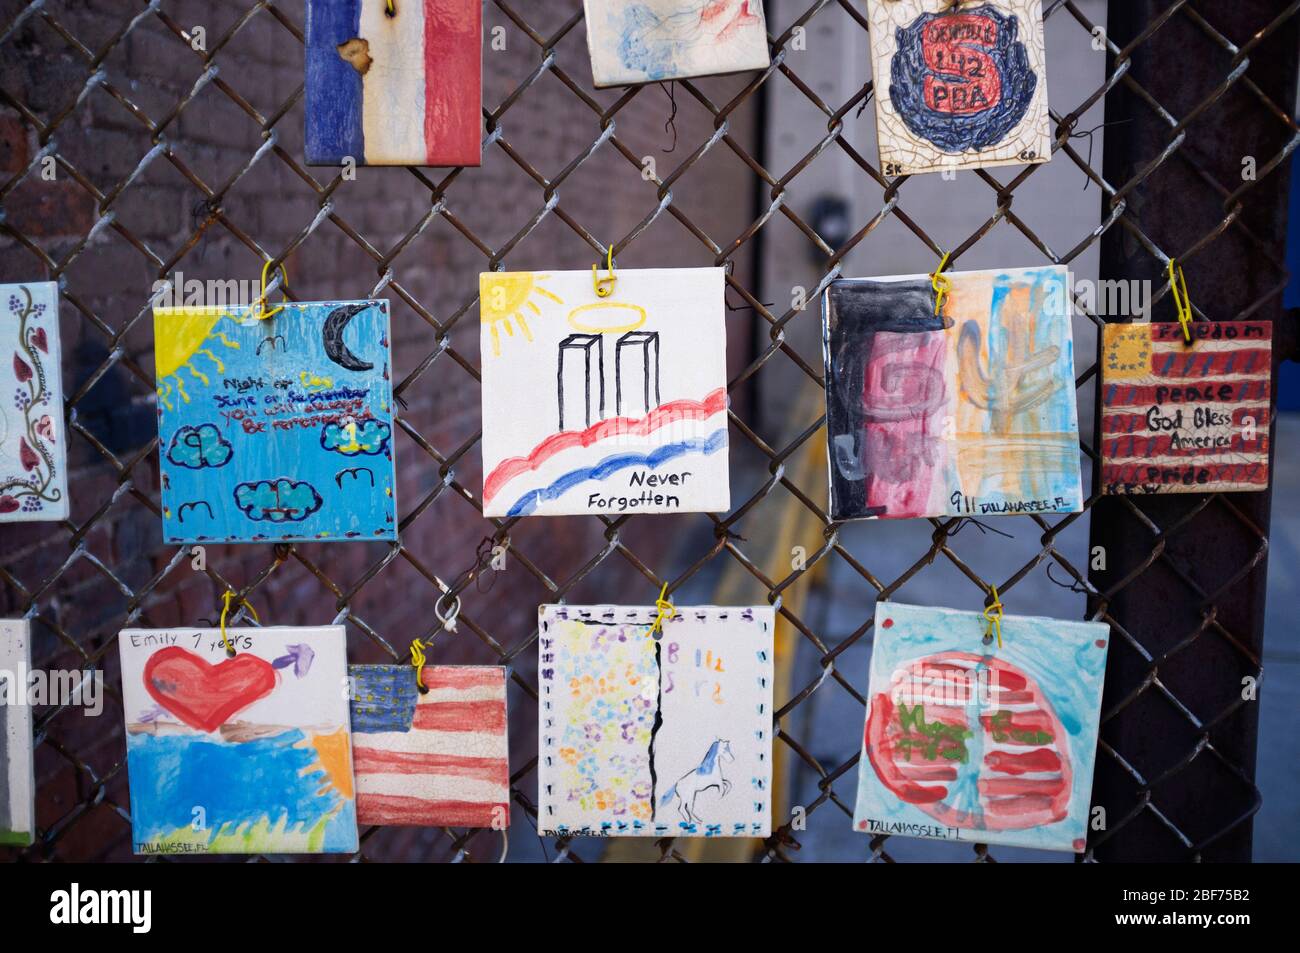 Piastrelle su una recinzione, New York. Per ricordare 9/11, attacco di terrore. Foto Stock